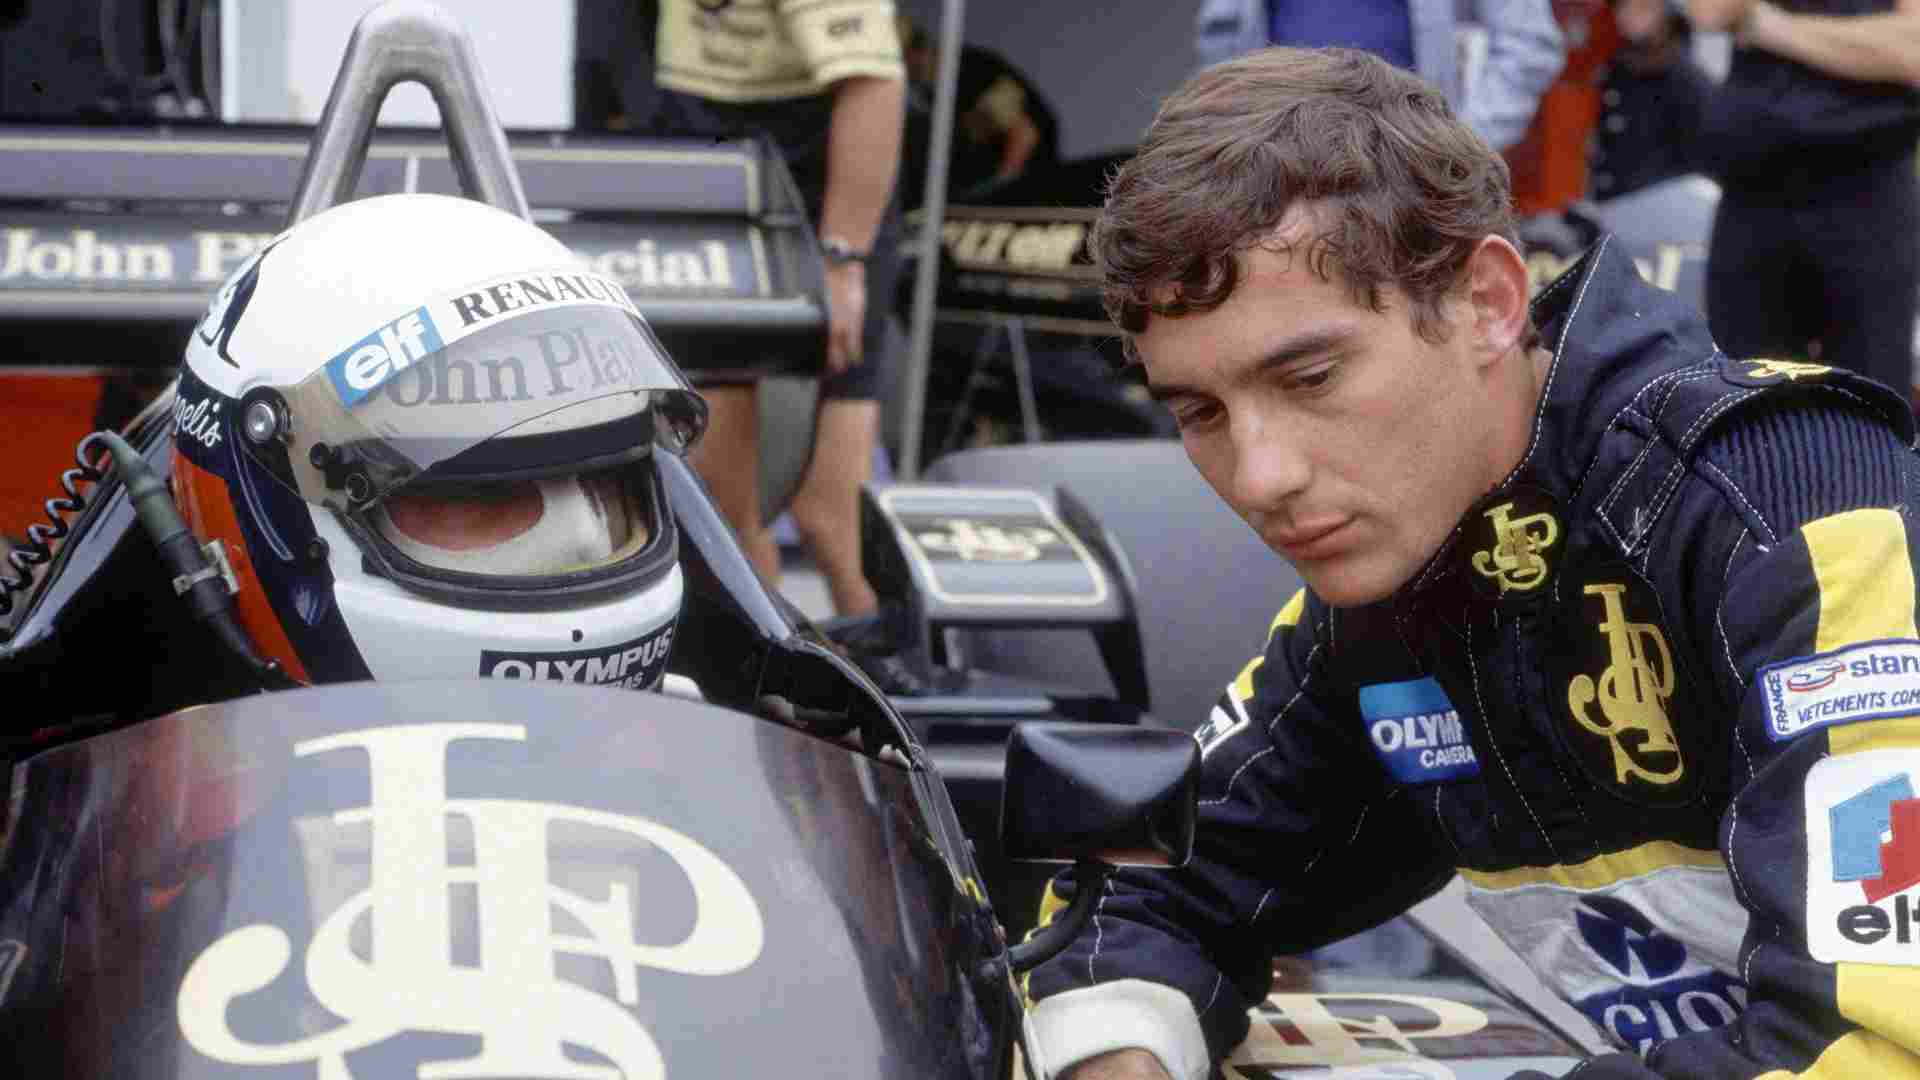 1985 - A Vitória de Senna